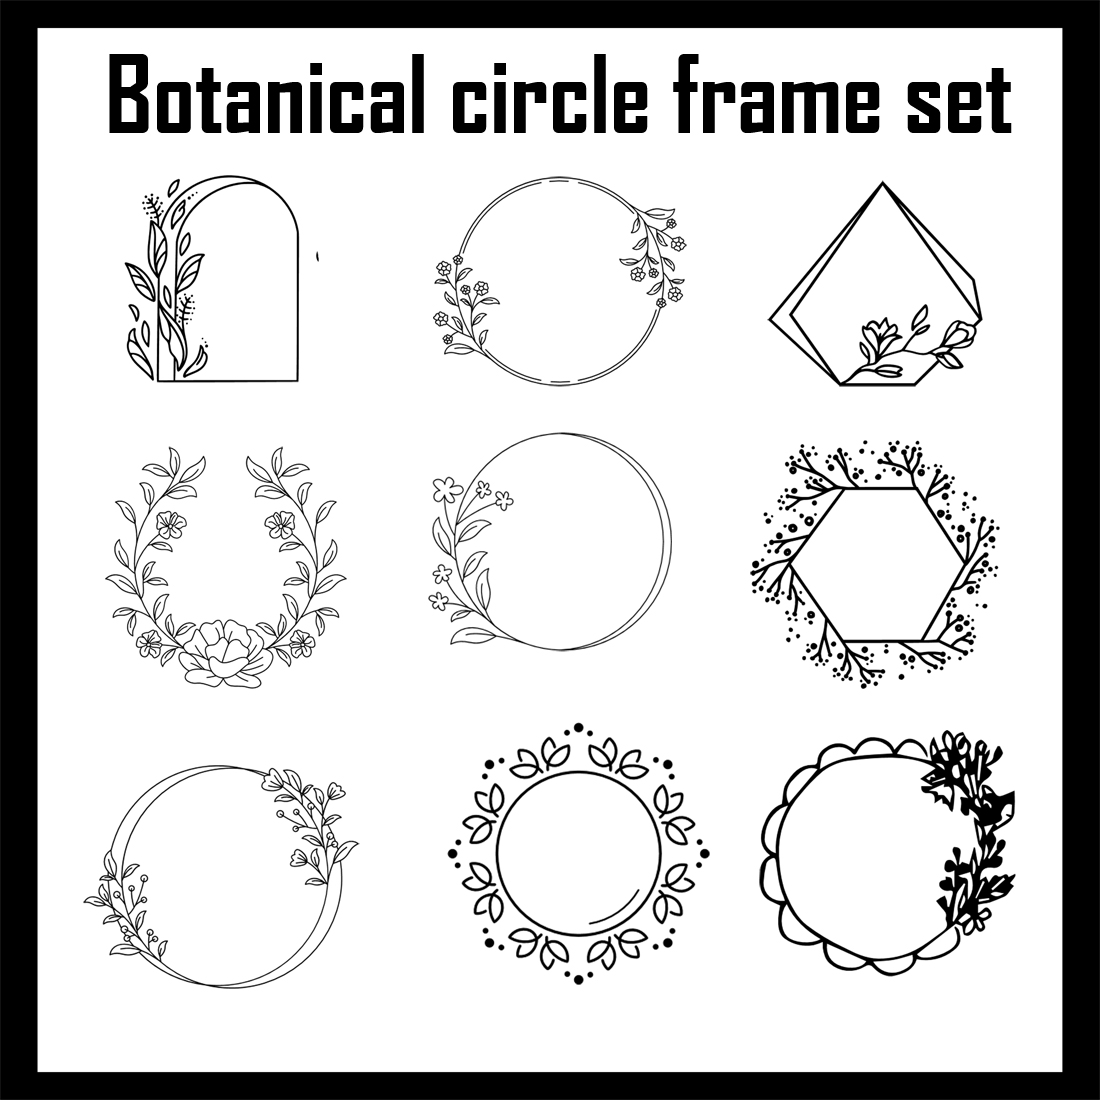 Prints of botanical frames.